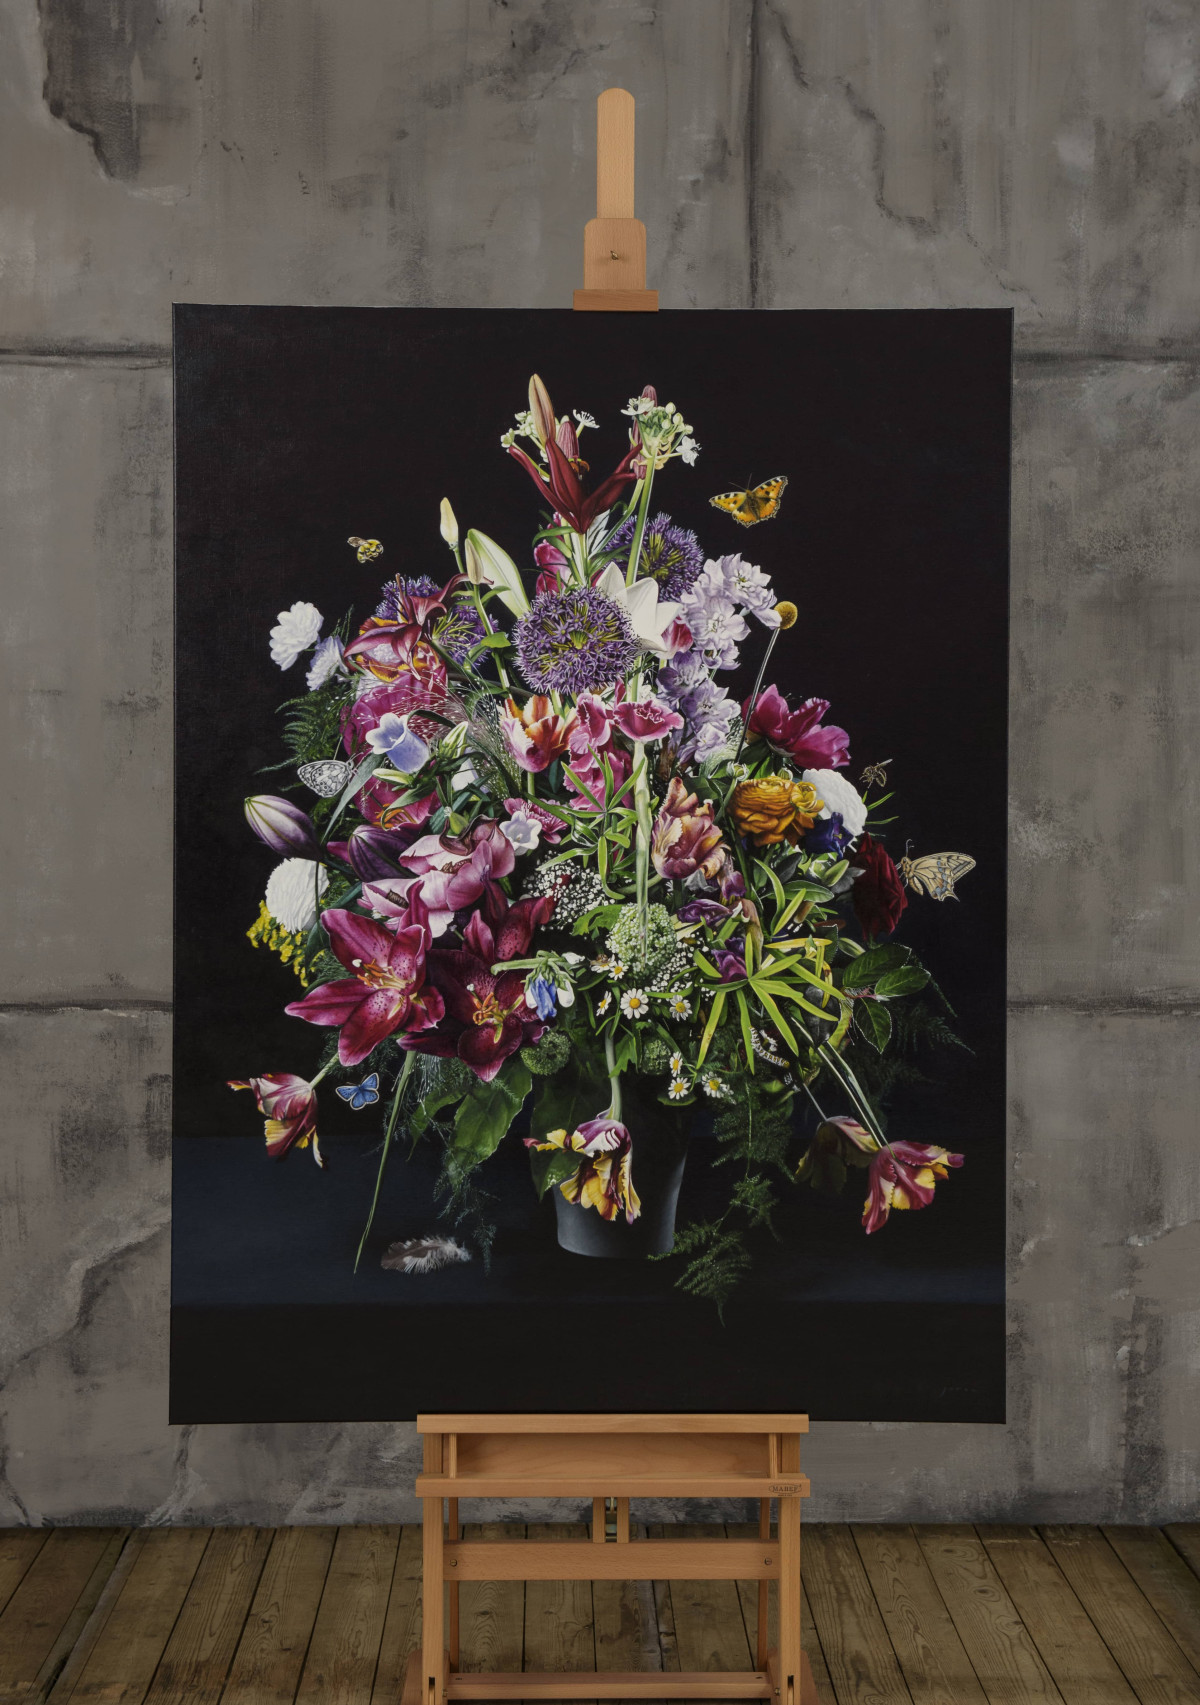 bloemstilleven-olie-op-linnen-160x120-cm-2017-joran-van-der-haar-1578151028.jpg